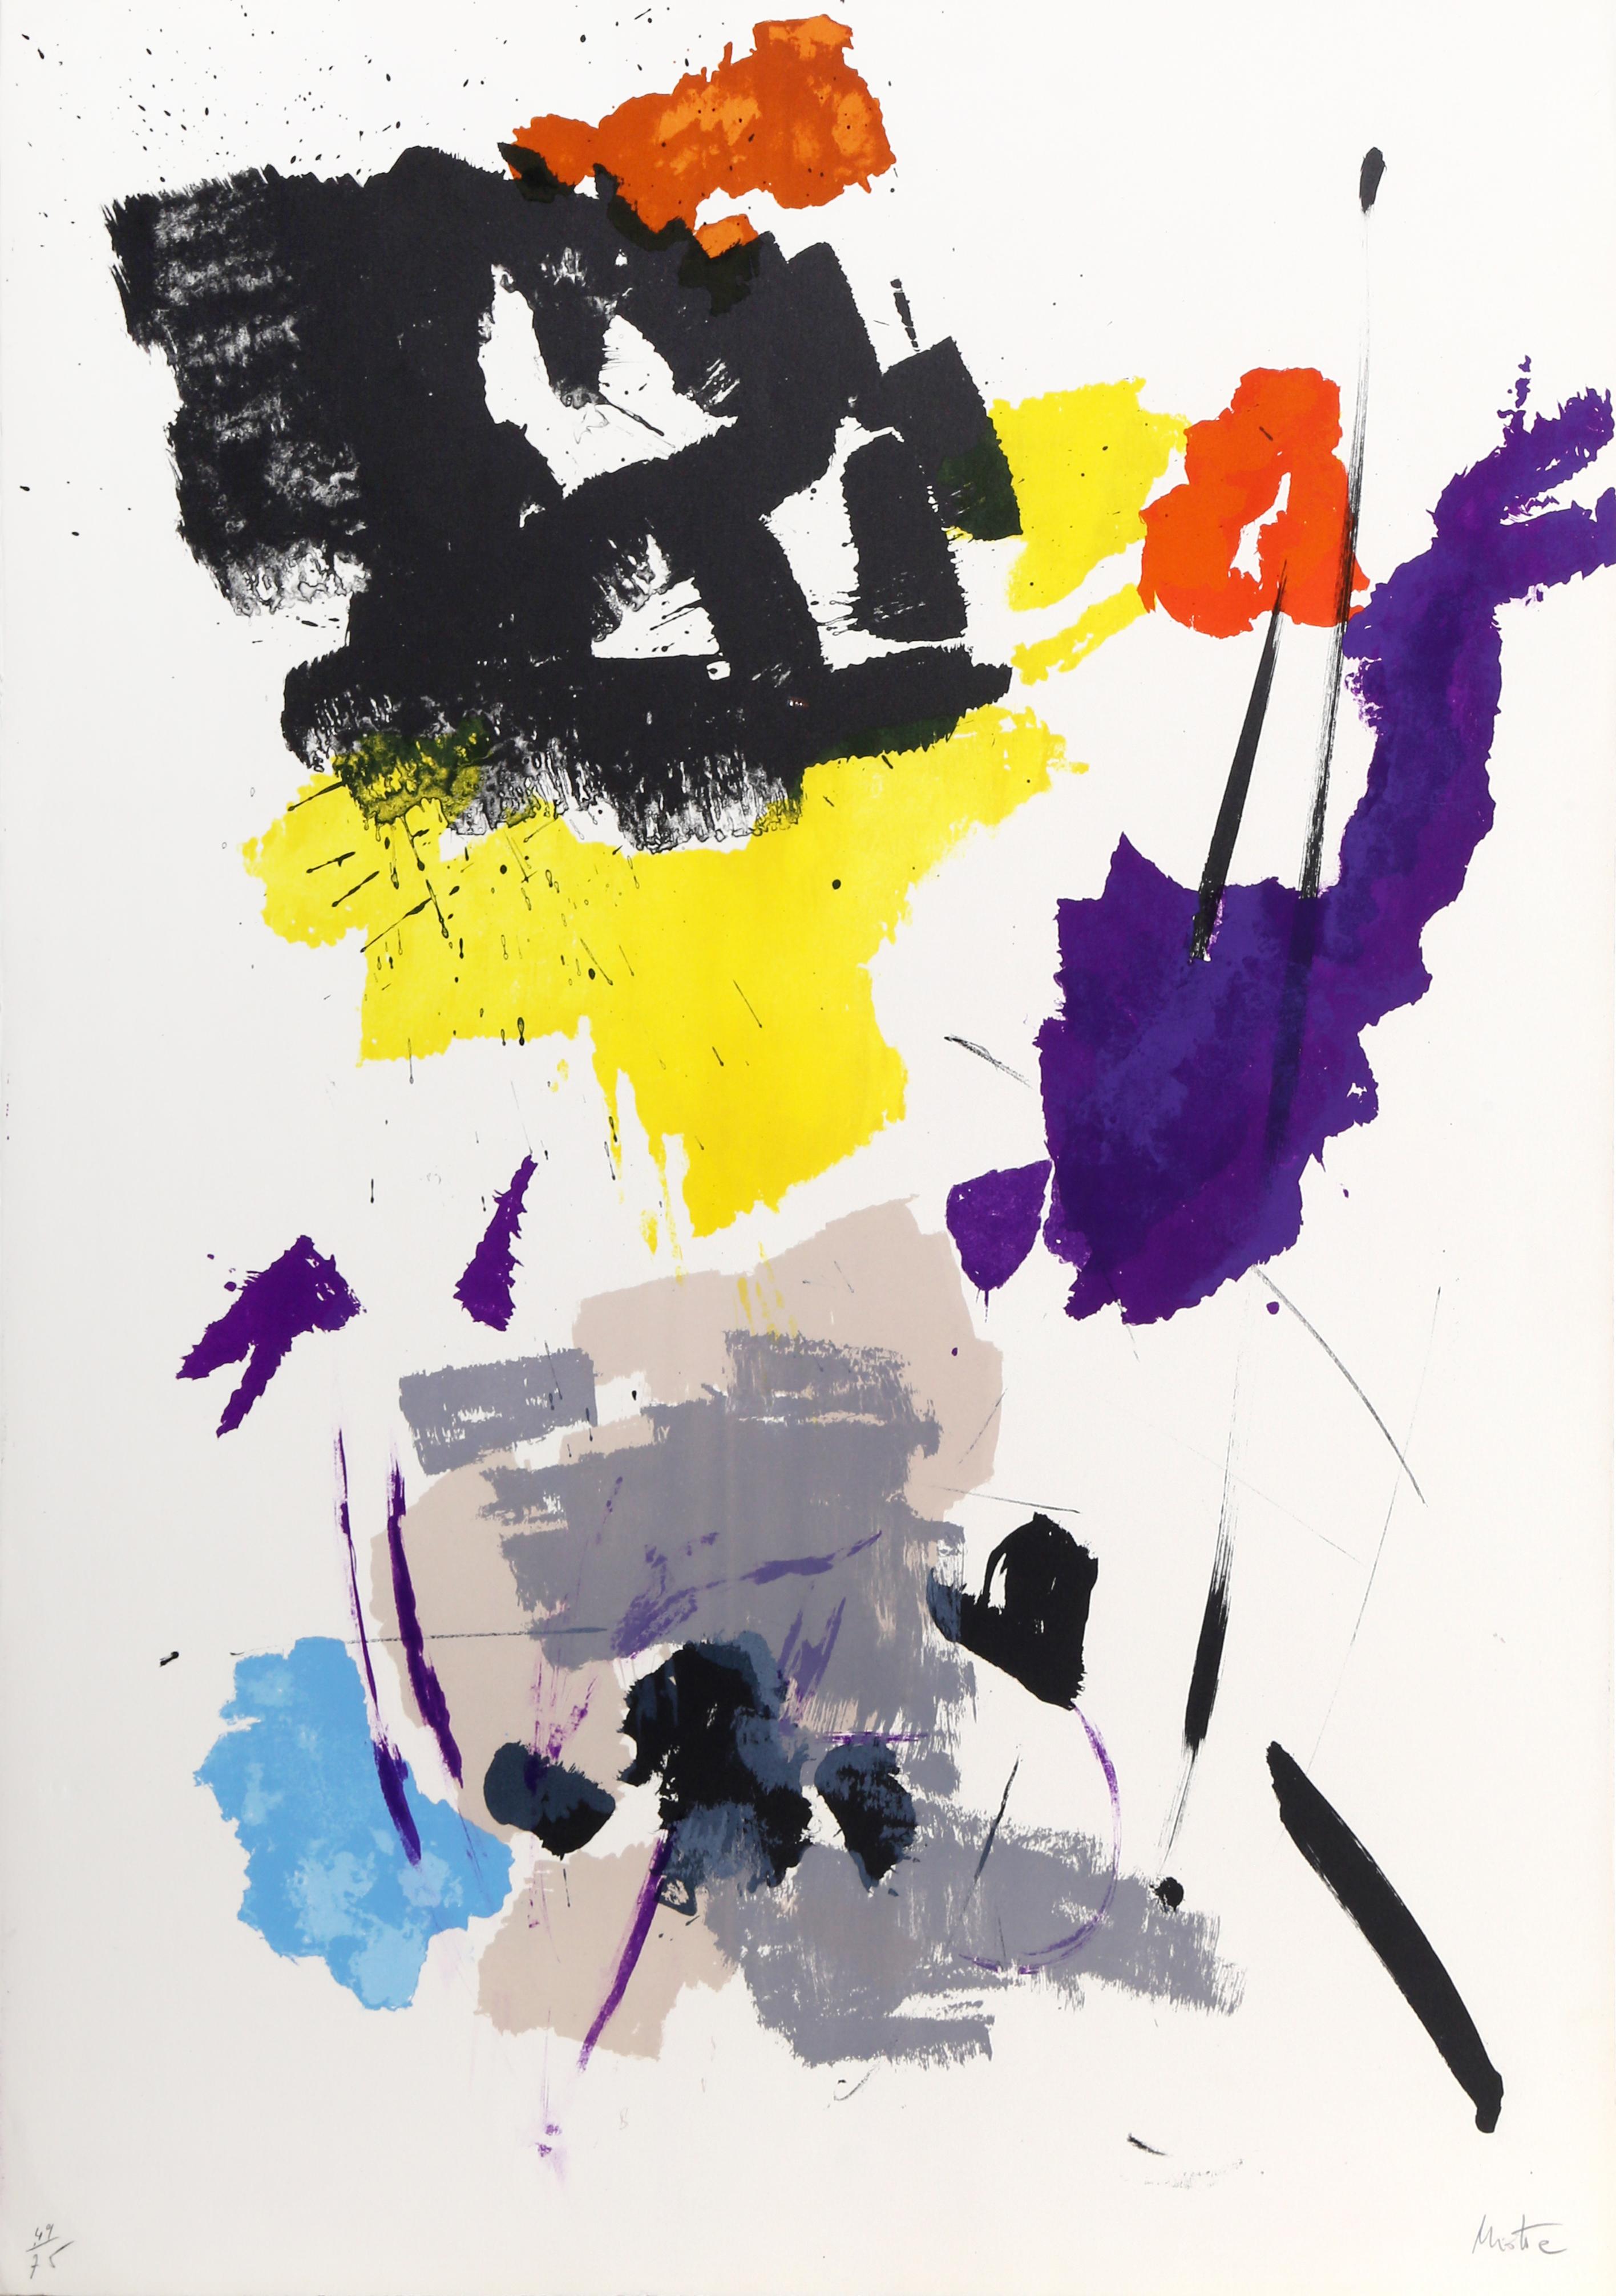 Une lithographie abstraite saisissante de l'artiste expressionniste abstrait français, Jean Miotte (1926 - 2016). L'estampe est signée à la main et numérotée 49/75 au crayon.